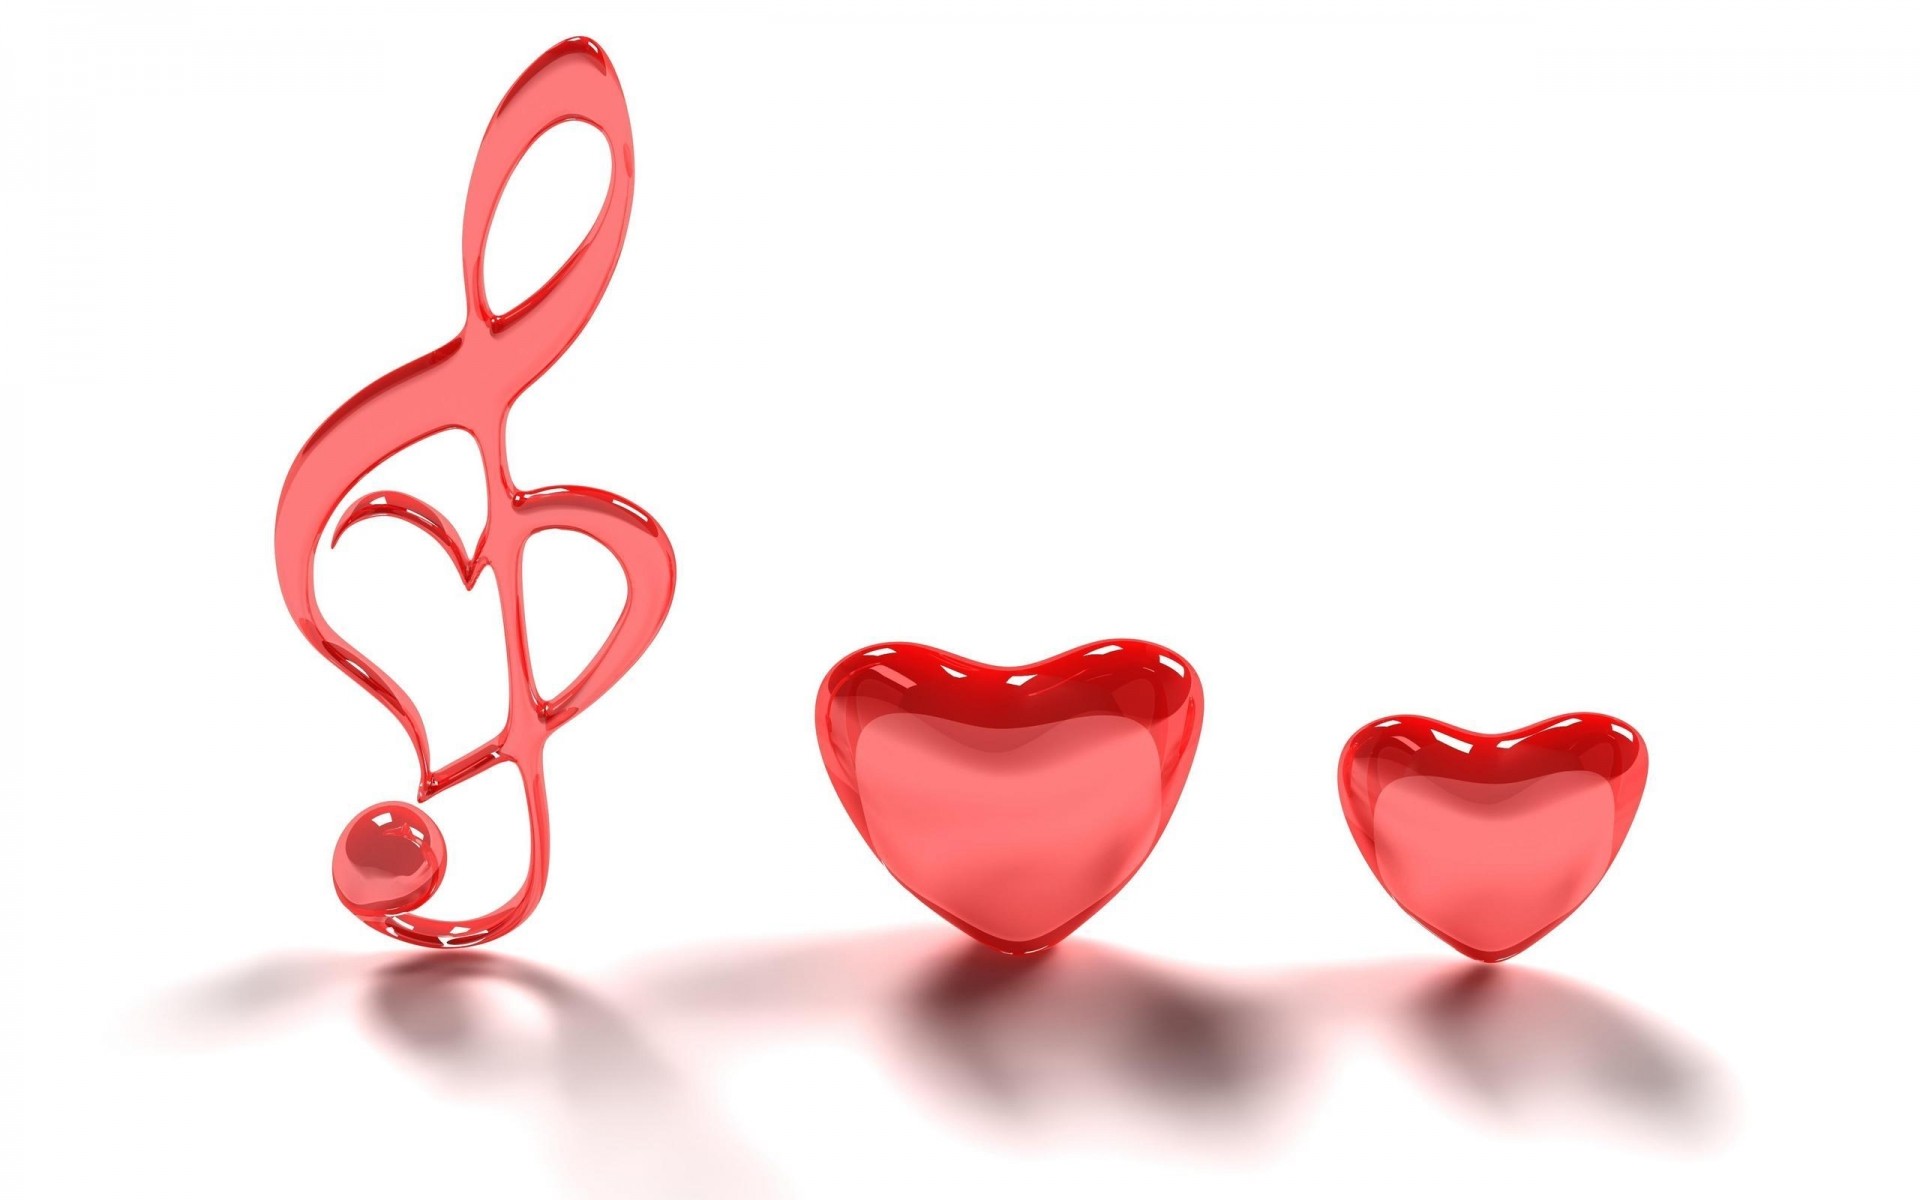 абстракция сердце любовь романтика романтический день святого валентина символ светит формы брак любовь свадьба рабочего стола дело купидон подарок фон искусство